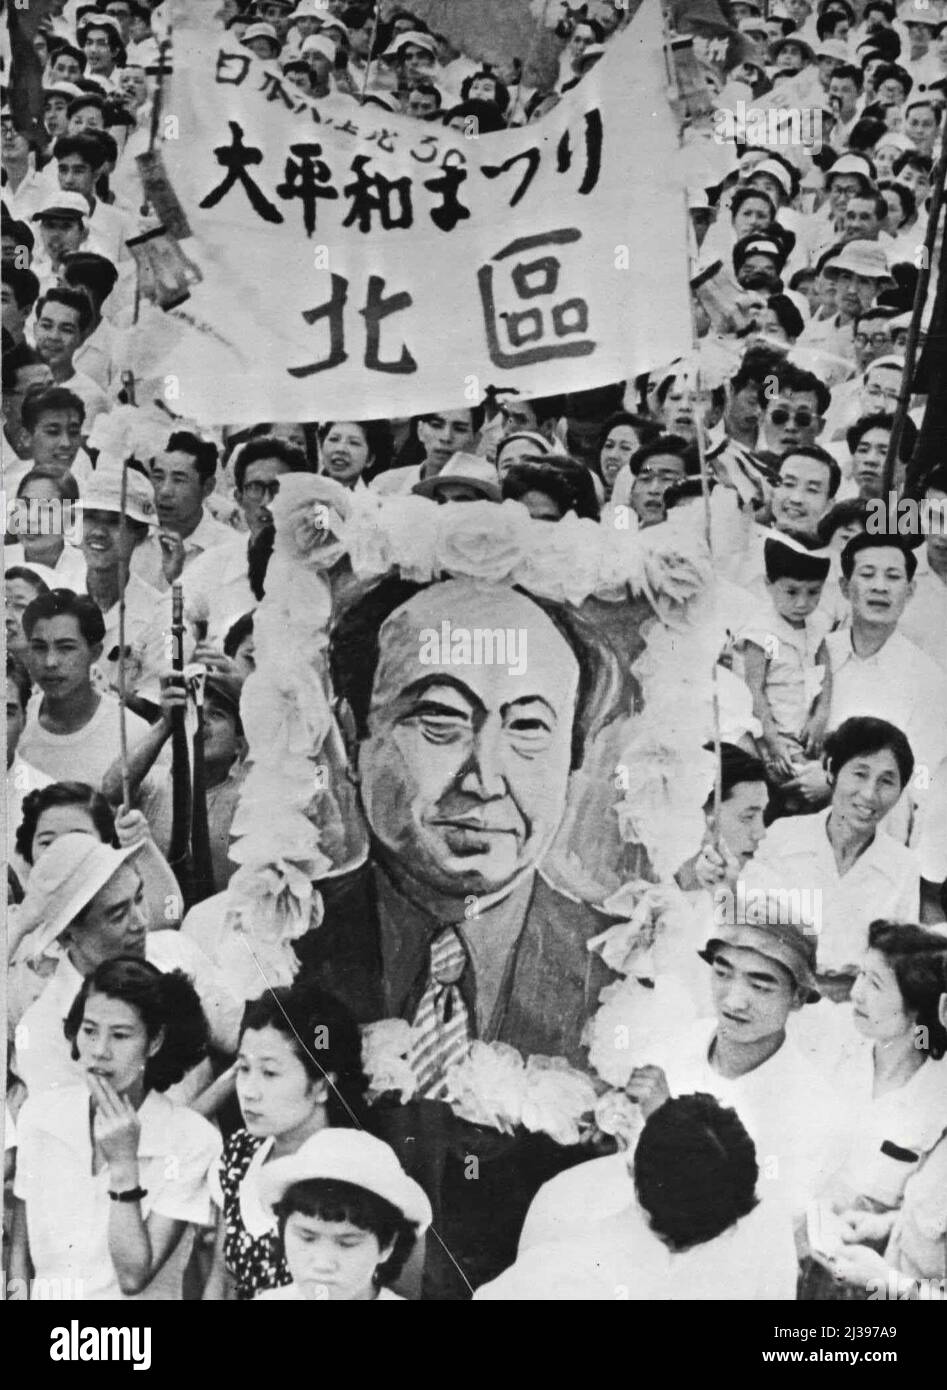 Japanische Kommunisten feiern 30.. Jahrestag: Teil der Menge, die ein blühendes Porträt des Führers der japanischen kommunistischen Partei zeigt und trägt. Die japanische Kommunistische Partei feierte vor kurzem ihren 30.. Jahrestag mit einem Treffen im Edogawa Park, Nordost-Tokio. Es waren mehr als 15.000 Menschen da. Die Kundgebung war für den 5. Juli geplant, aber da sich die Eigentümer weigerten, alle Treffpunkte zur Verfügung zu stellen. Sie musste auf den 24. August verschoben werden. 6. September 1952. (Foto von Paul Popper). Stockfoto